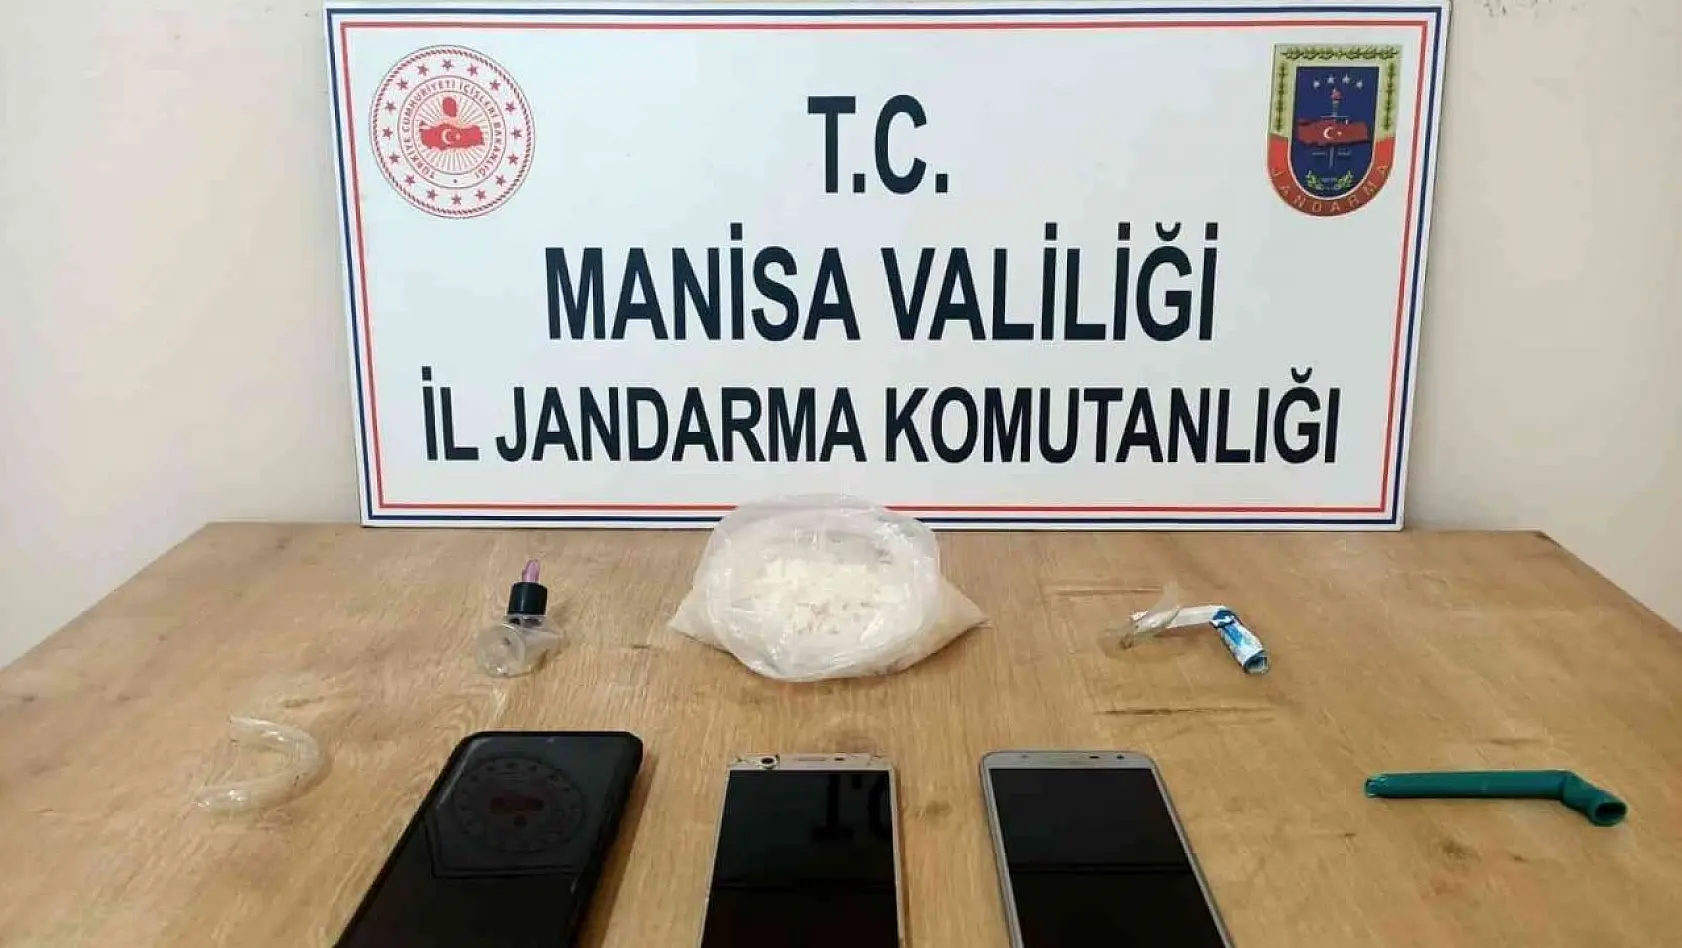 Manisa'da uyuşturucu operasyonu: 4 kişiye gözaltı